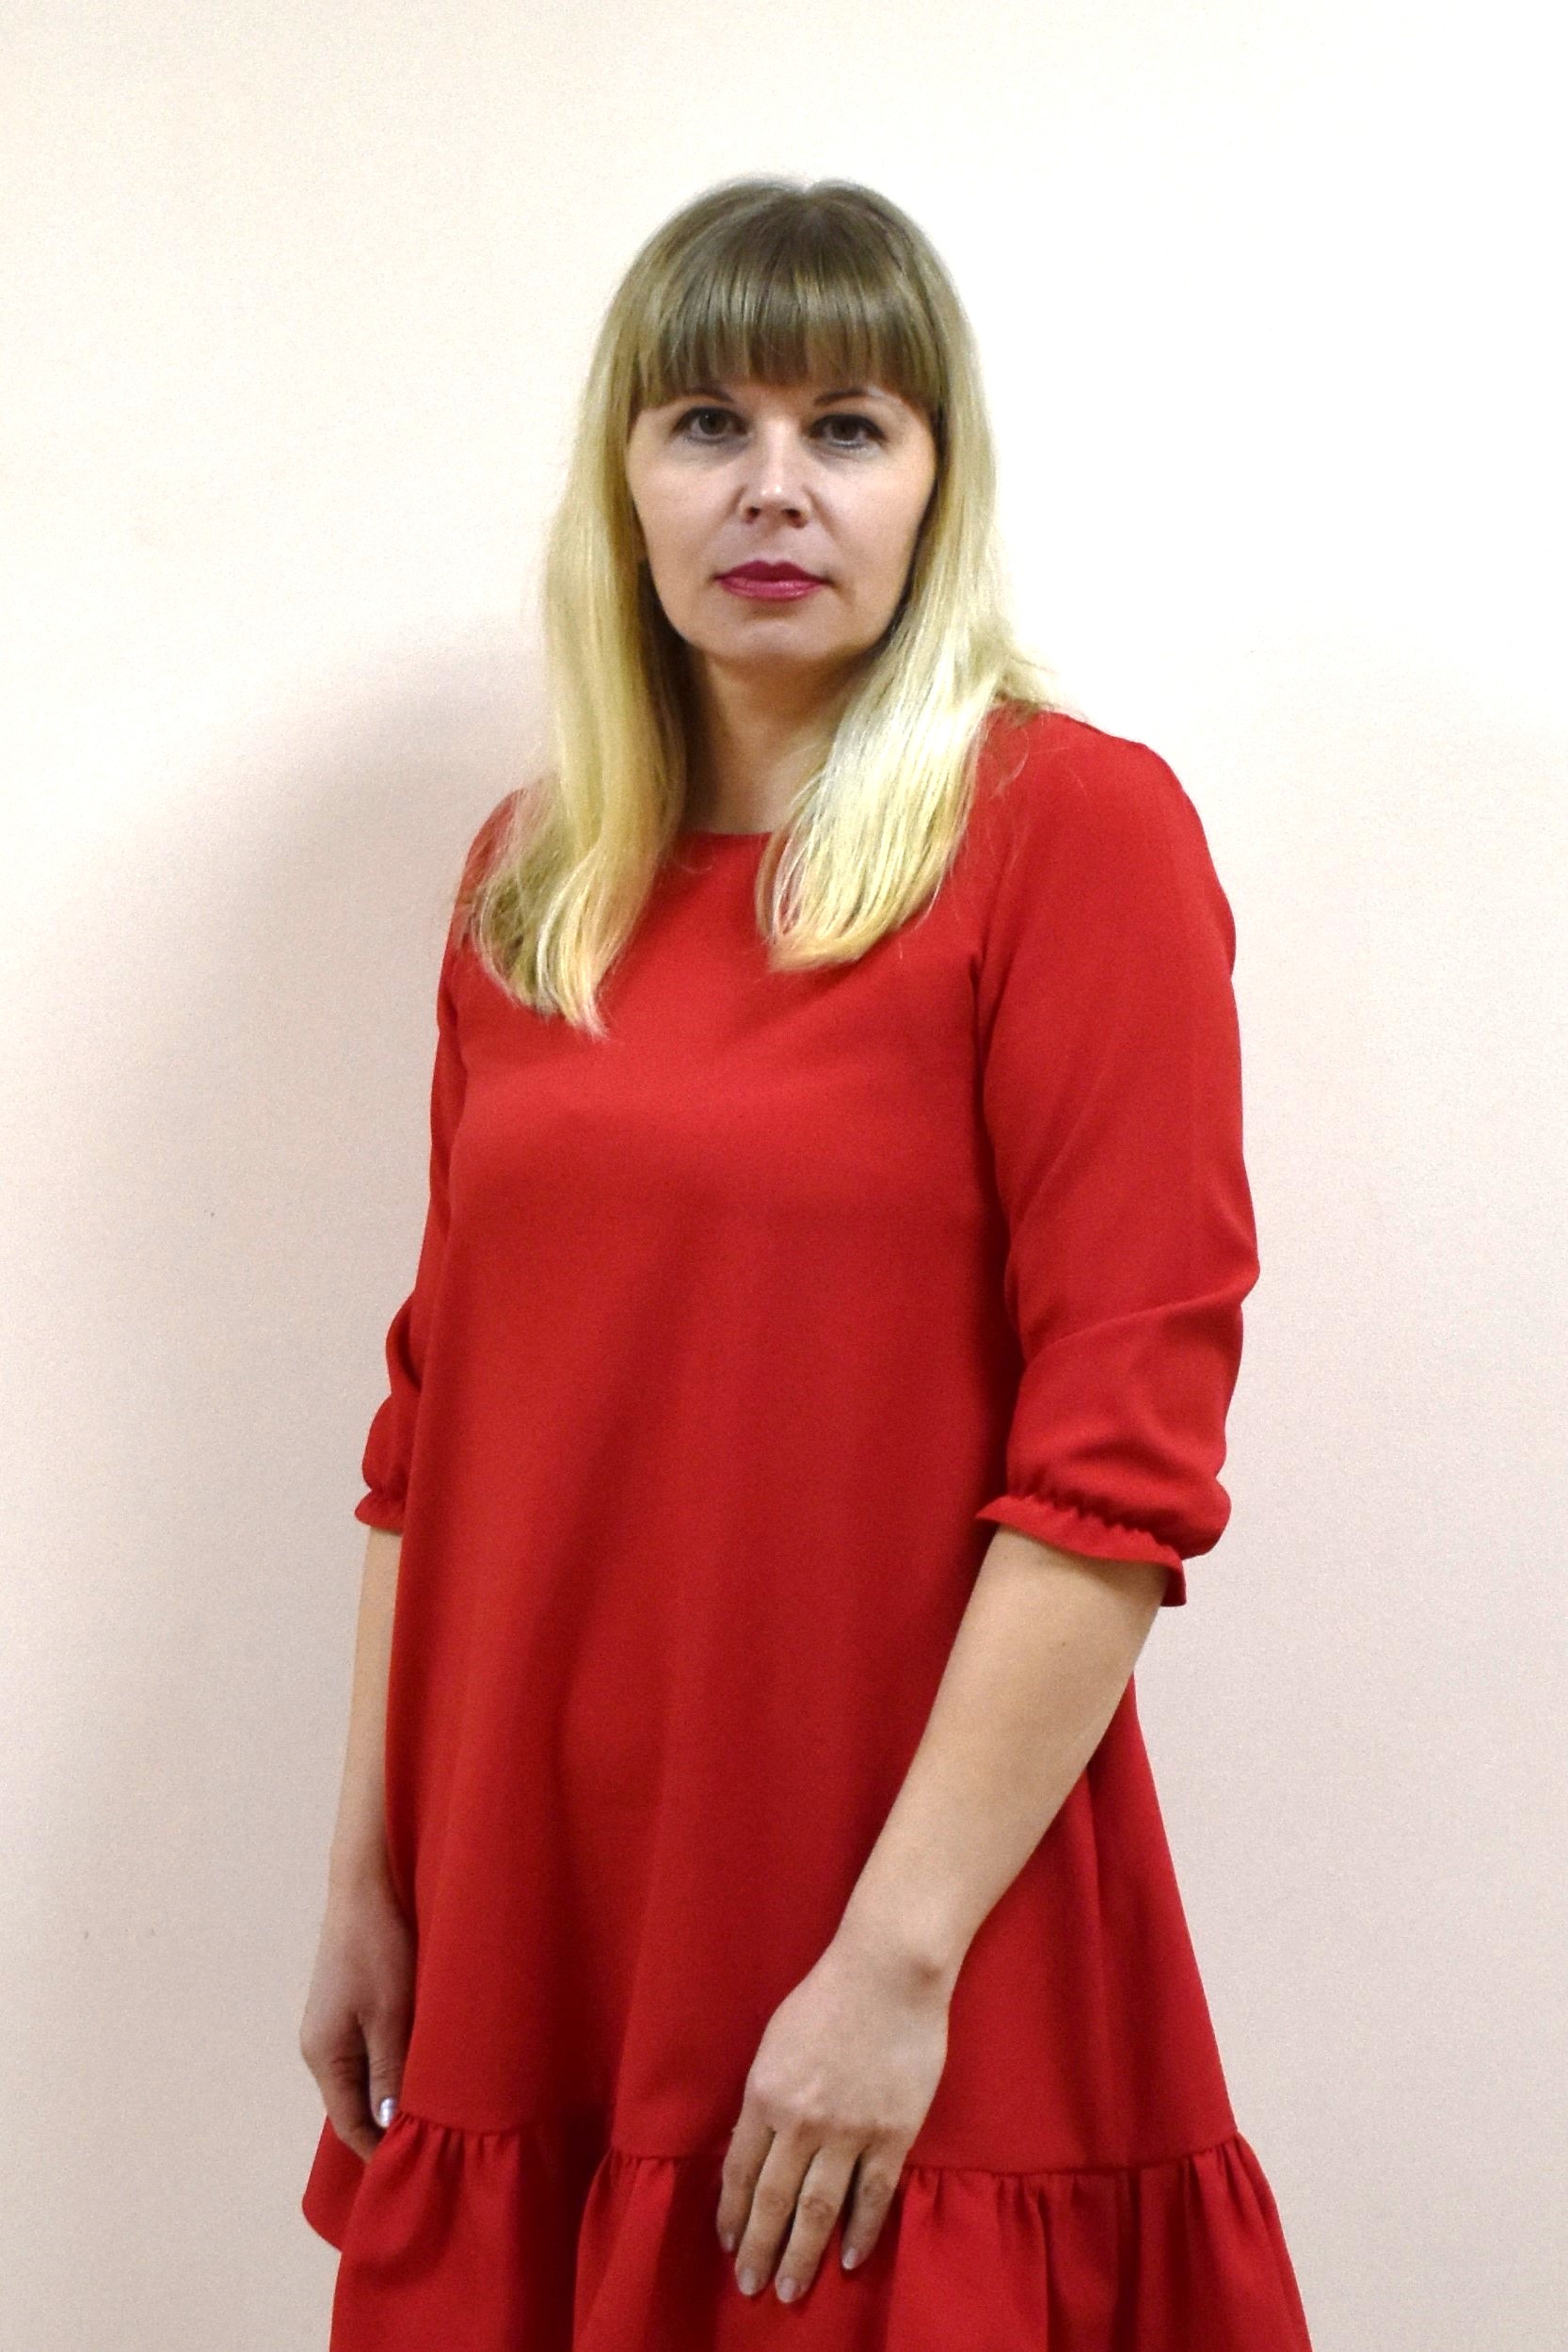 Евстратова Наталья Владиславовна.